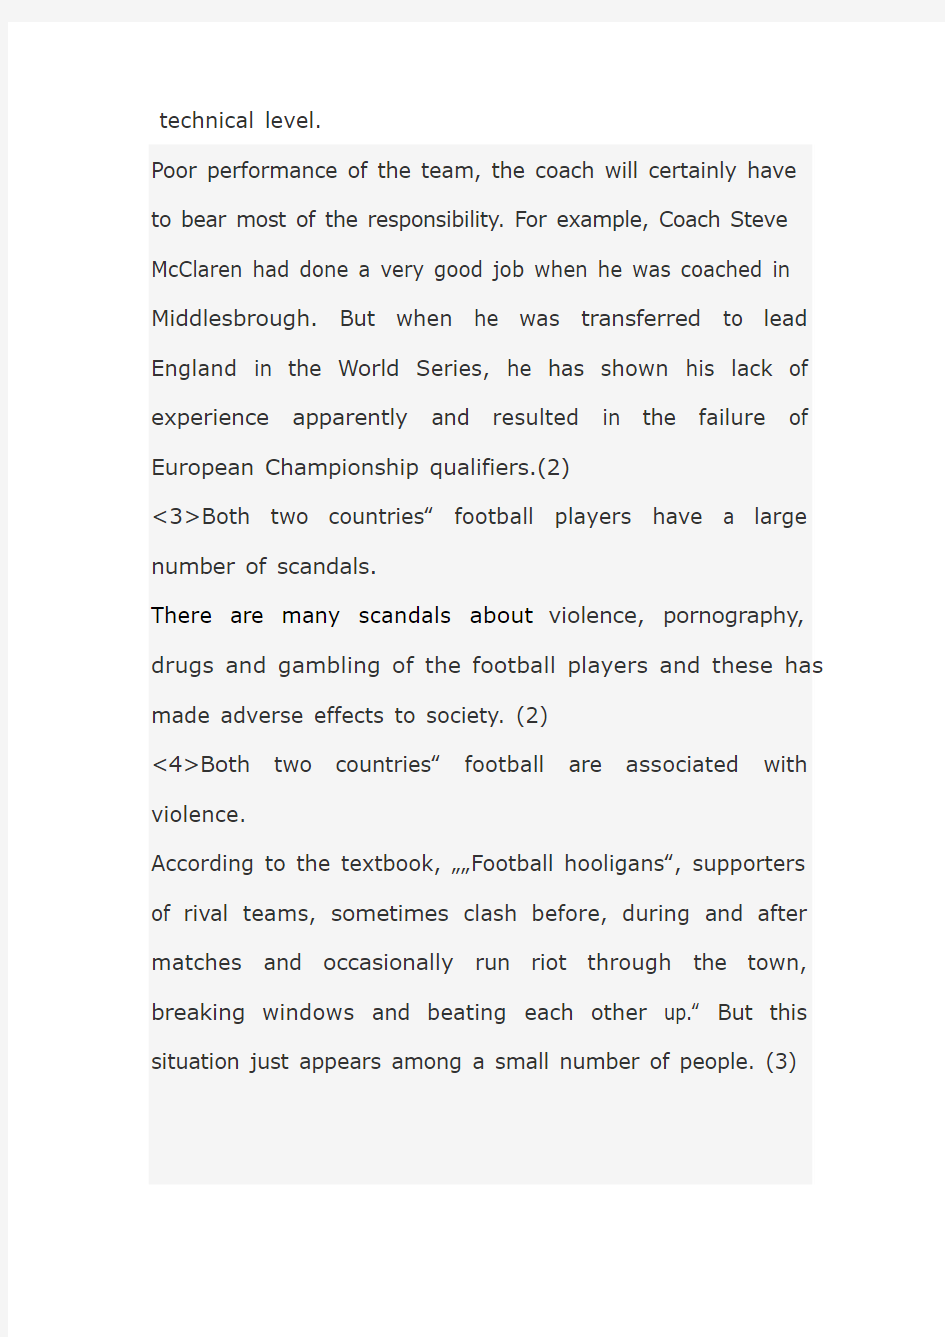 中英足球文化的差别比较 论文